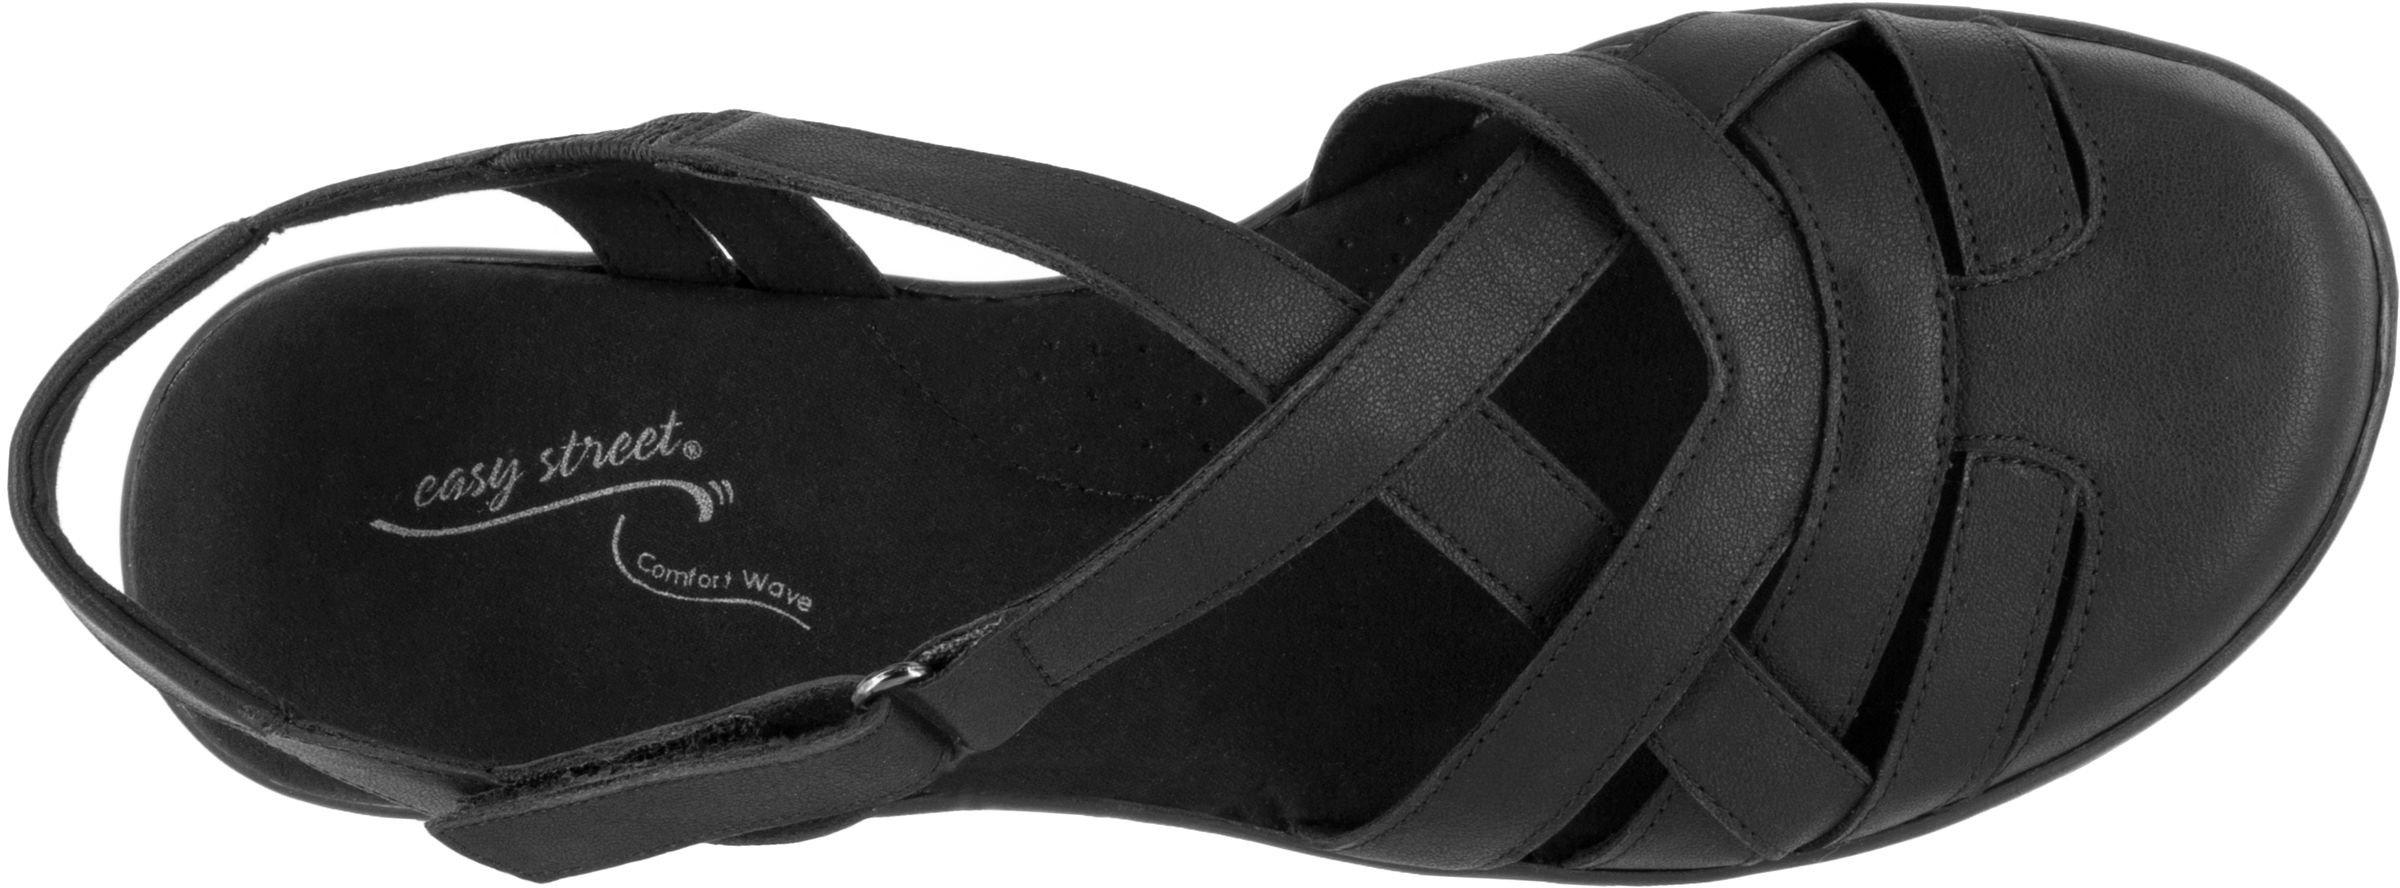 easy street women's garrett flat sandal